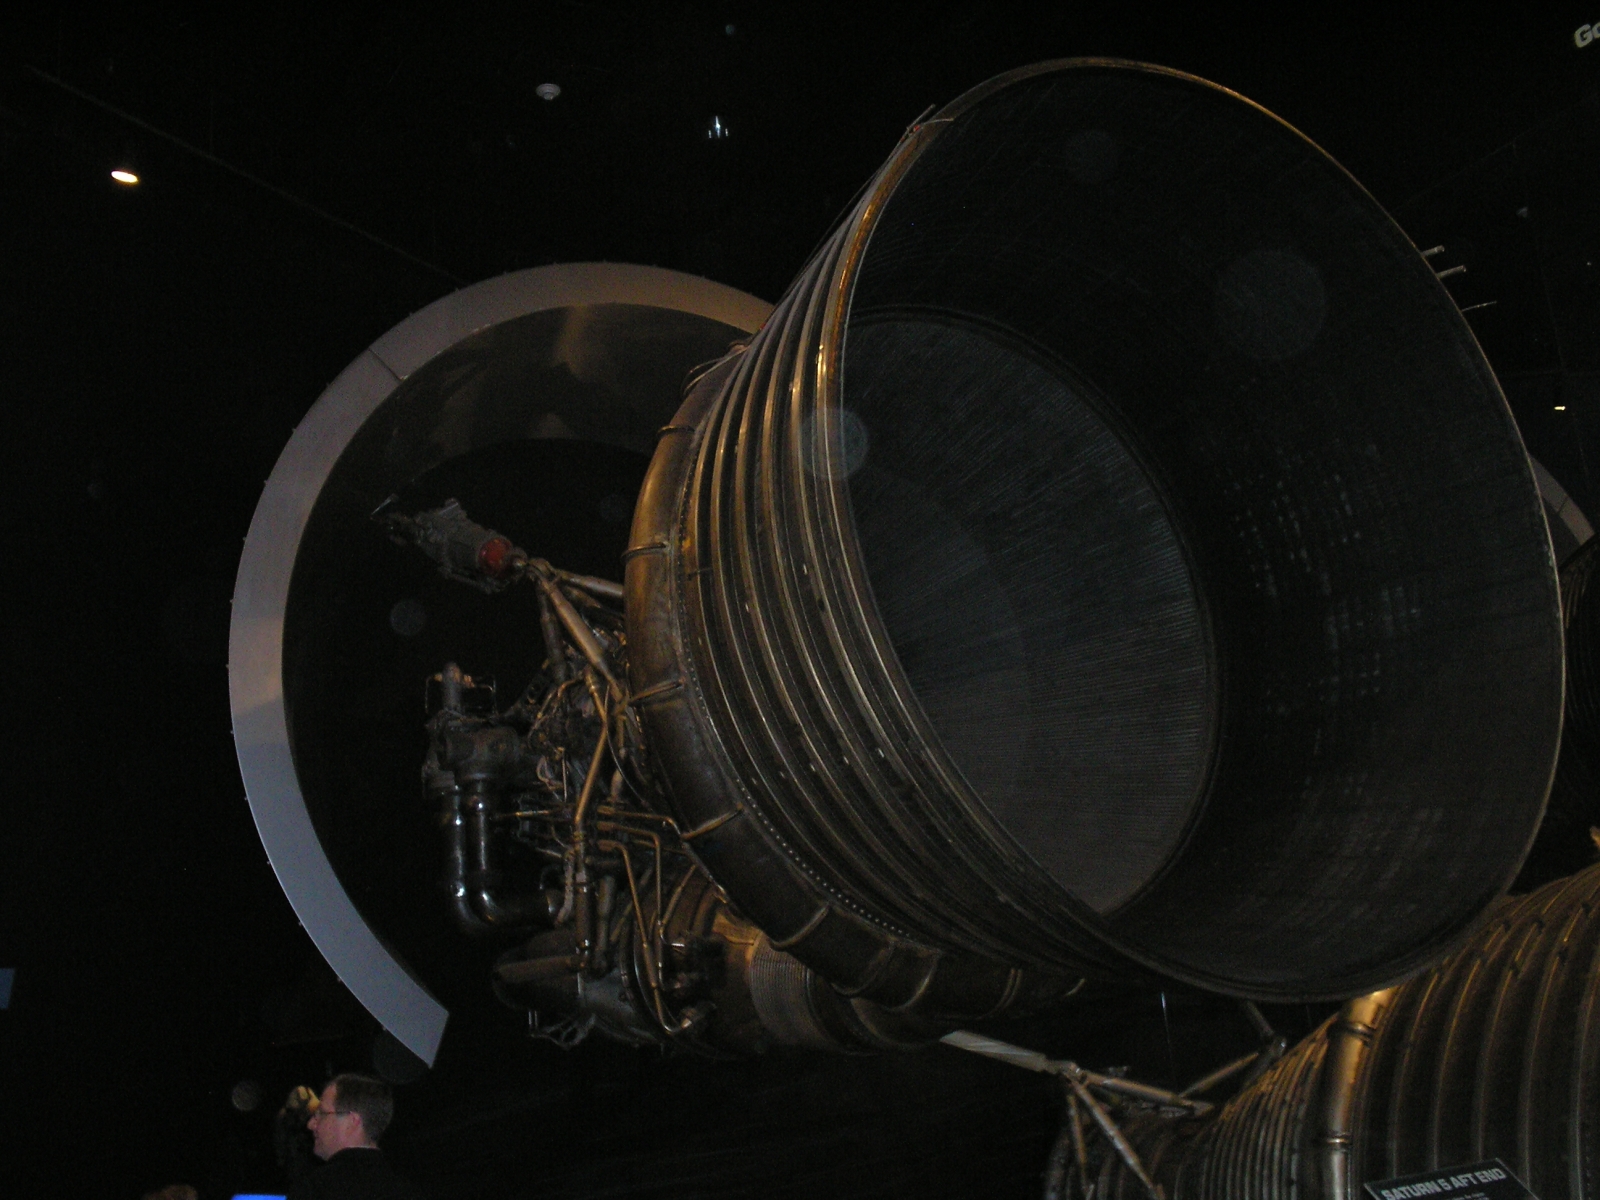 Giant rocket engine